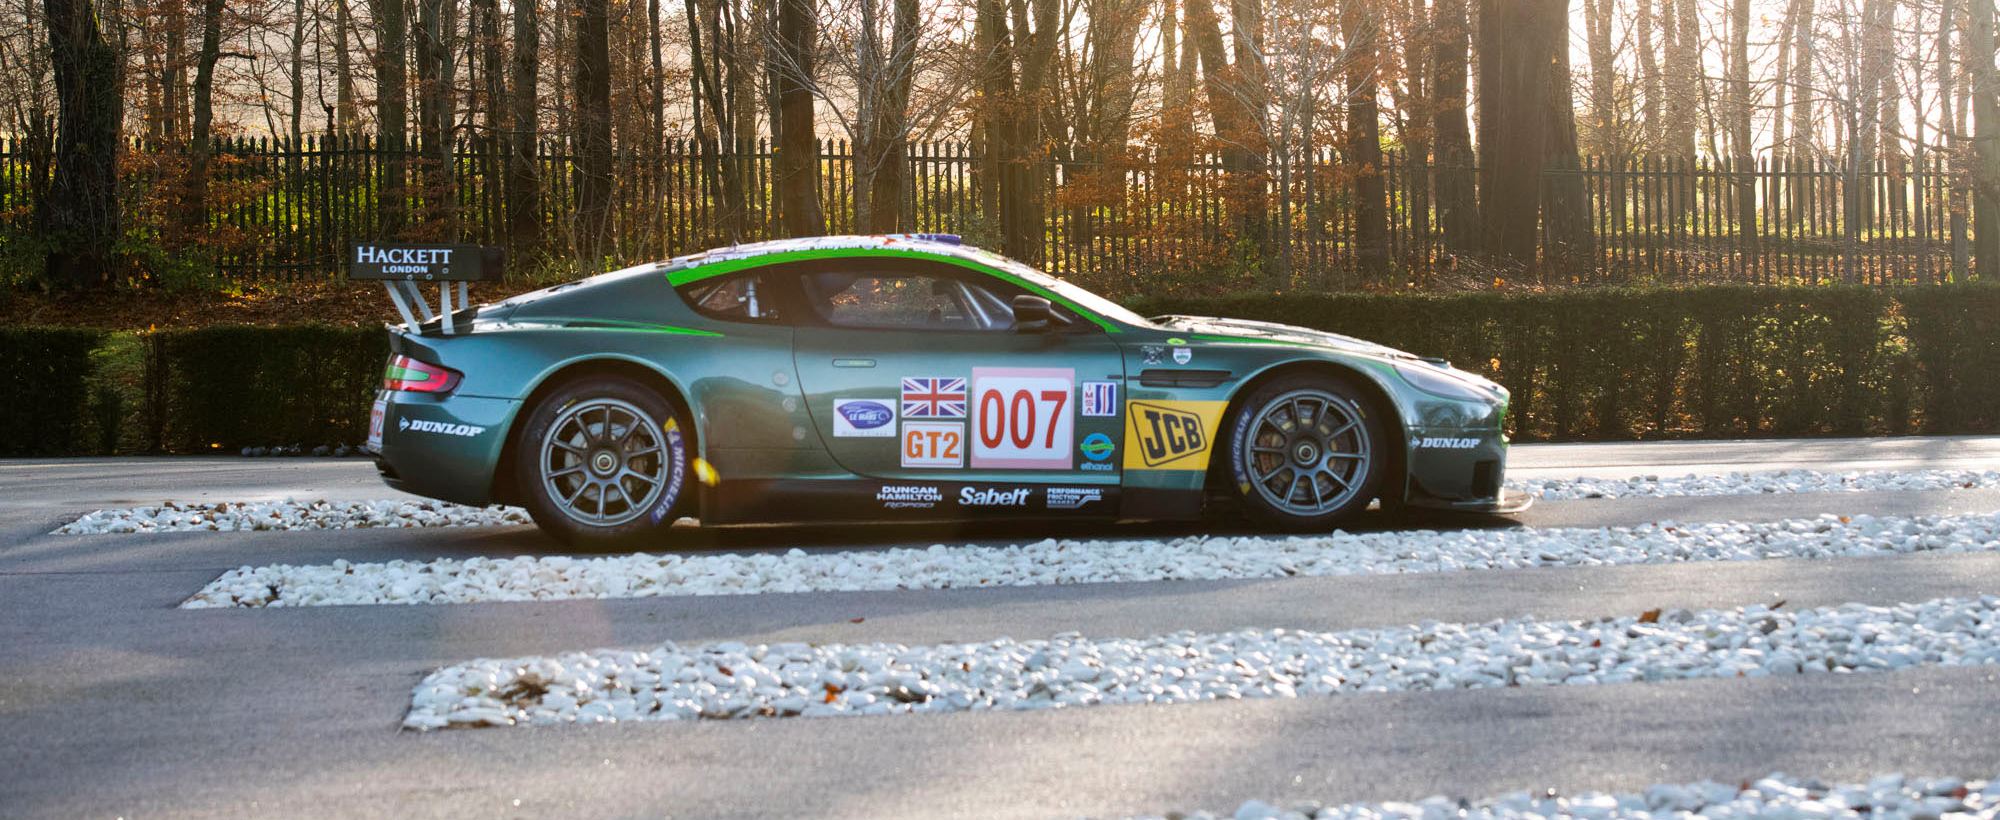 Aston Martin DBRS9 GT2 004.jpg